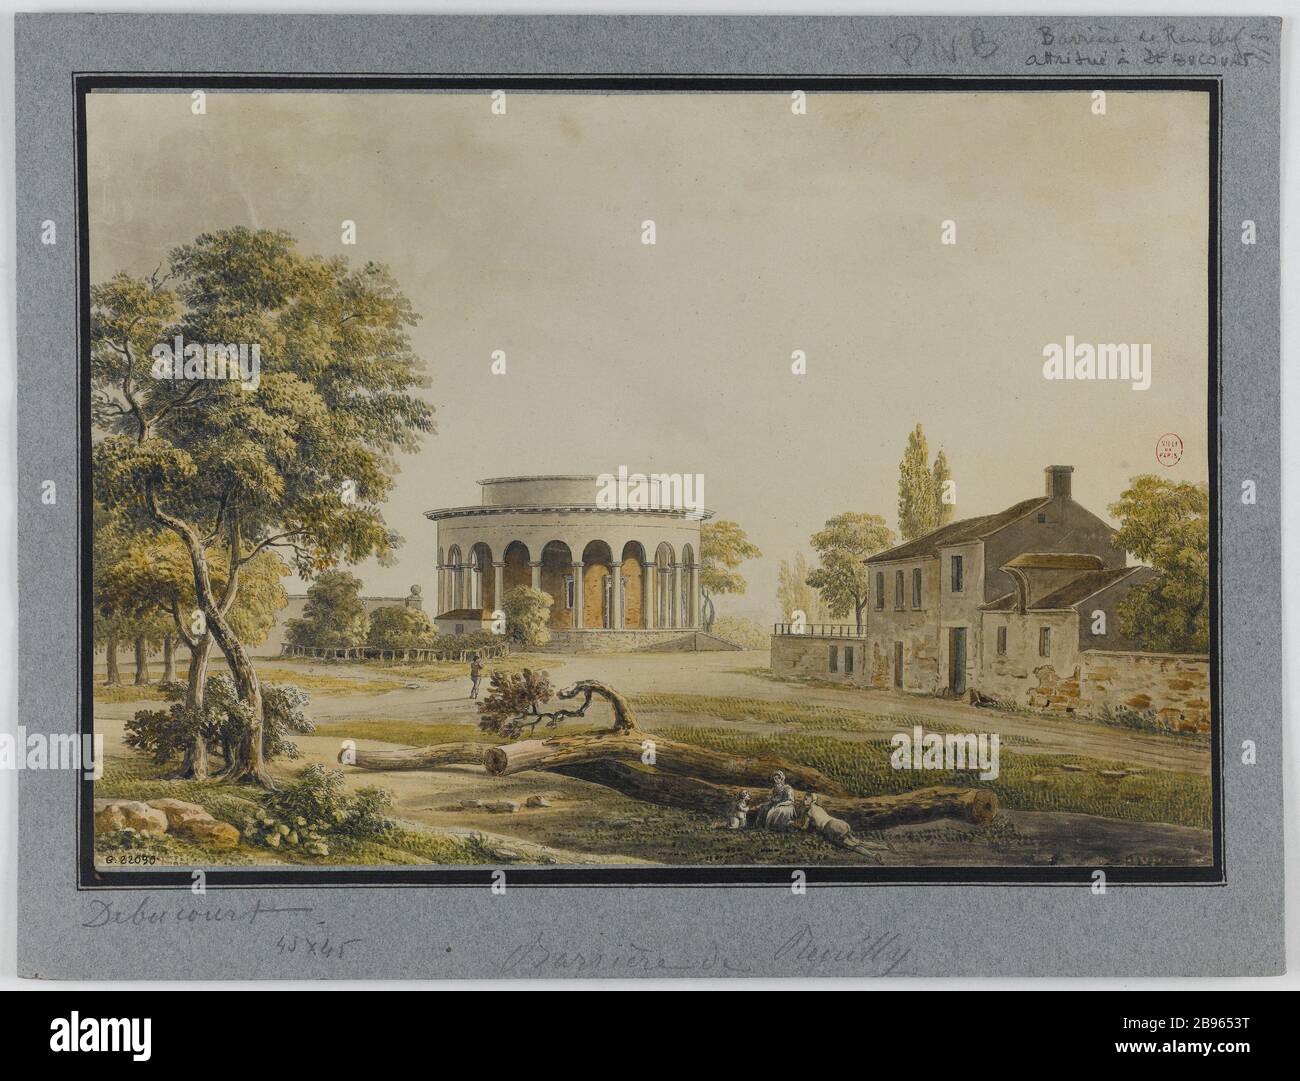 Barriera Reuilly Louis-Philibert Debucourt (1755-1832) d'après Palaiseau. "Barrière de Reuilly". Aquatinte en couleurs. Parigi, musée Carnavalet. Foto Stock